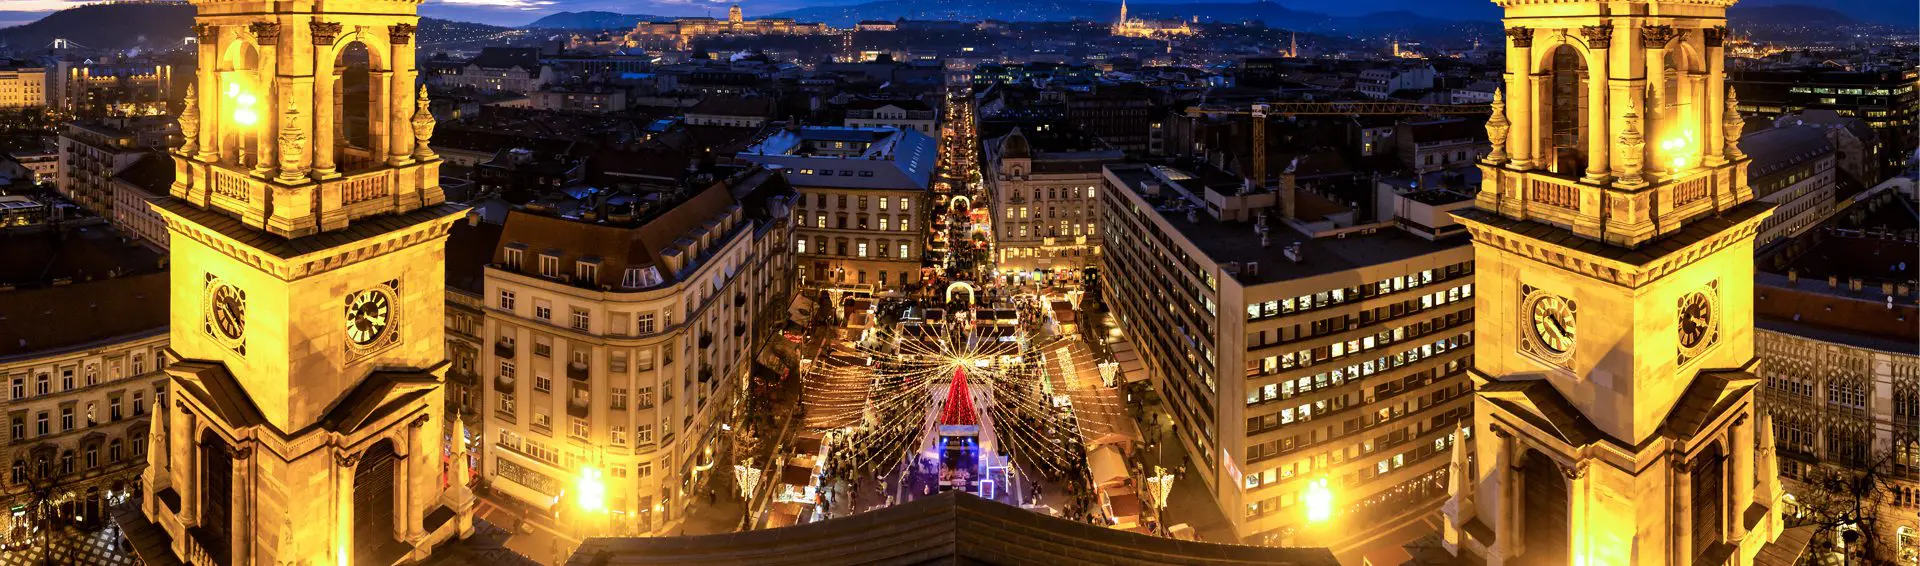 Dreamy Christmas Markets: Budapest to Munich